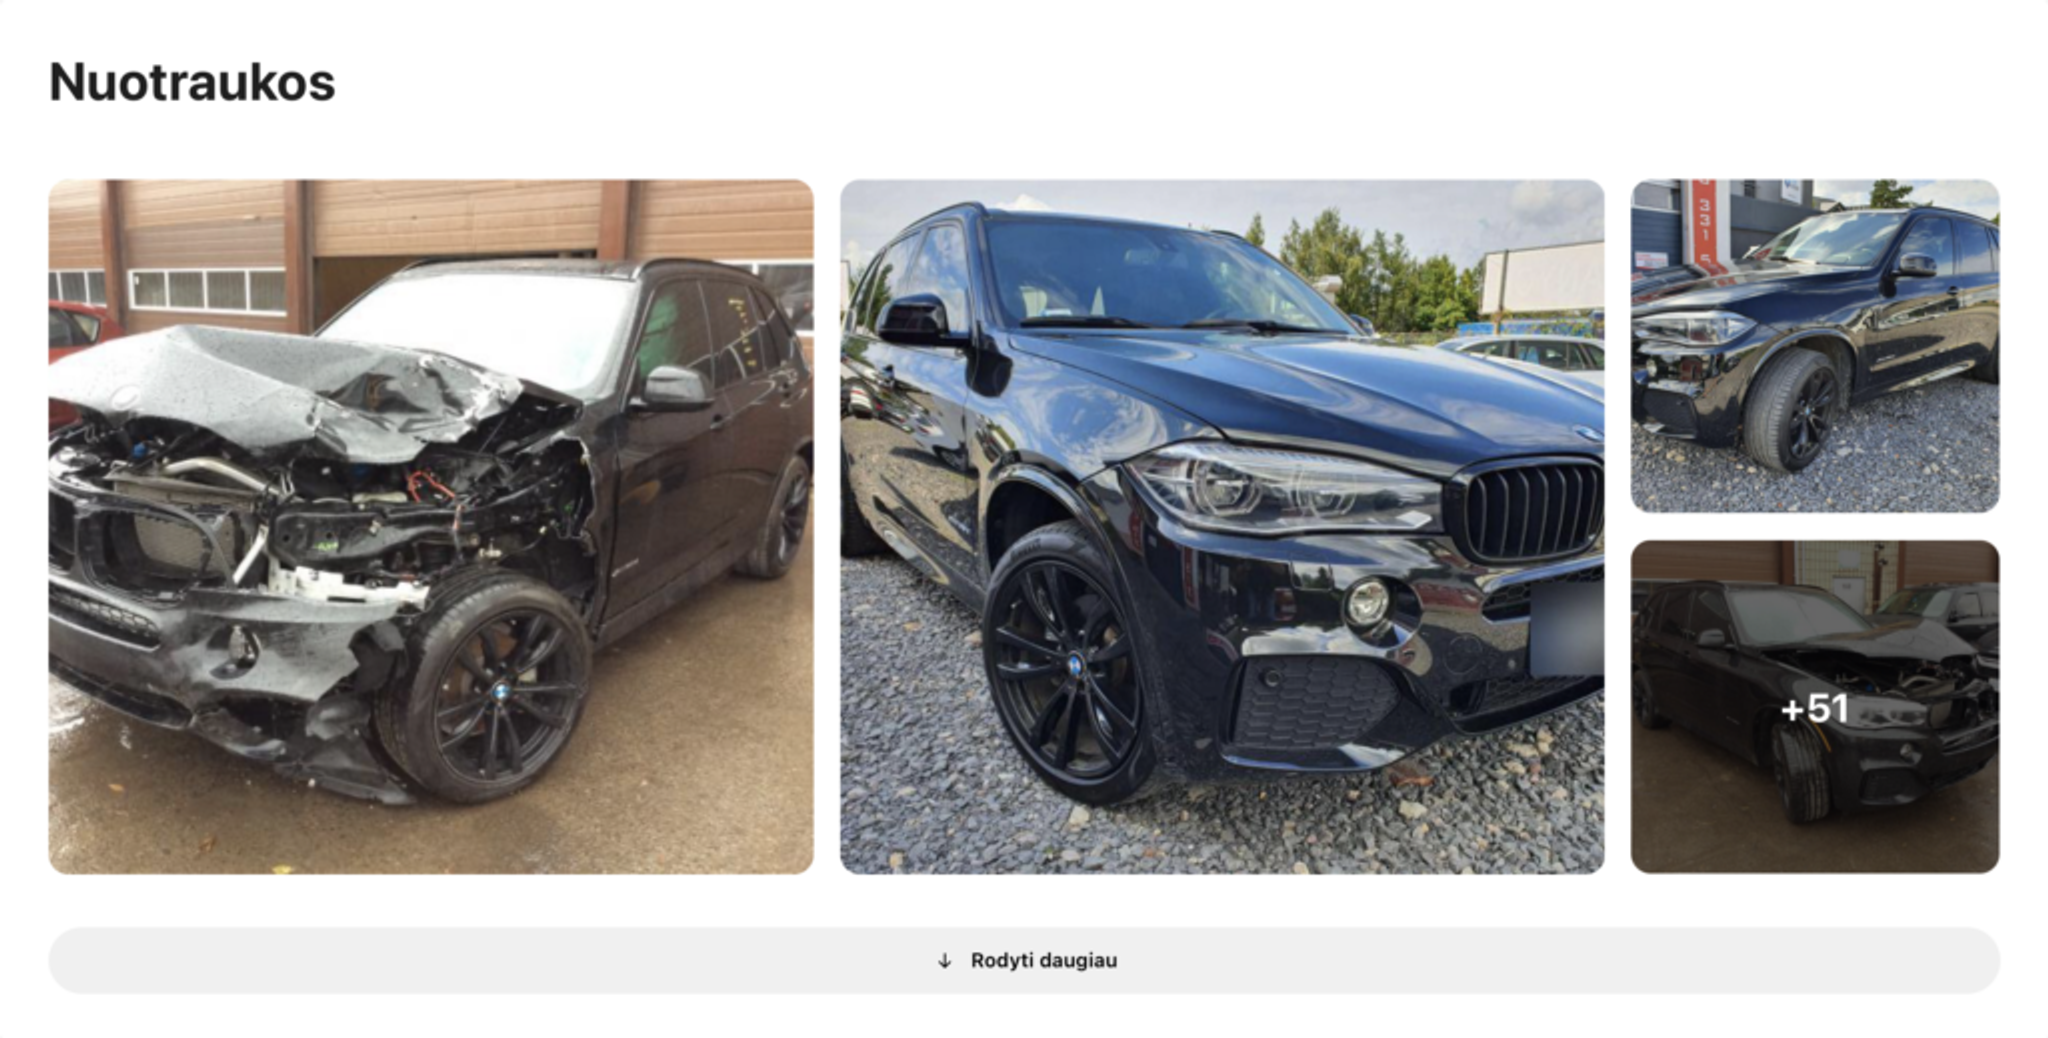 bmw nuotraukos po avarijos rastos carVertical, apgadintas automobilis, sudaužyta transporto priemonė, automobilis prieš ir po kapitalinio remonto